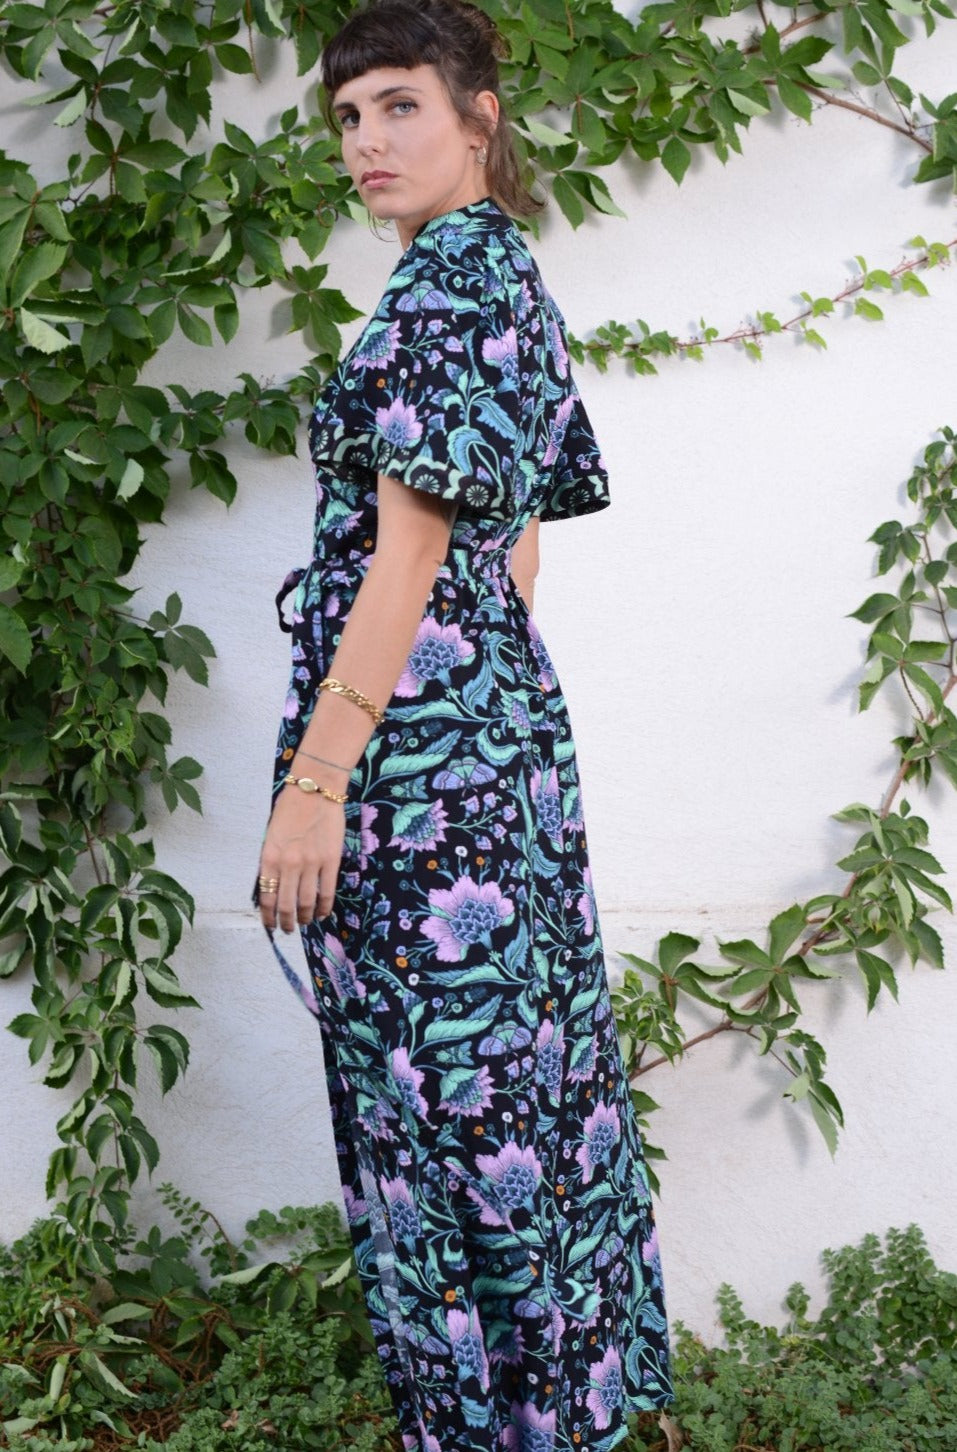 Femme Garden Dress - Lara Rosnovsky